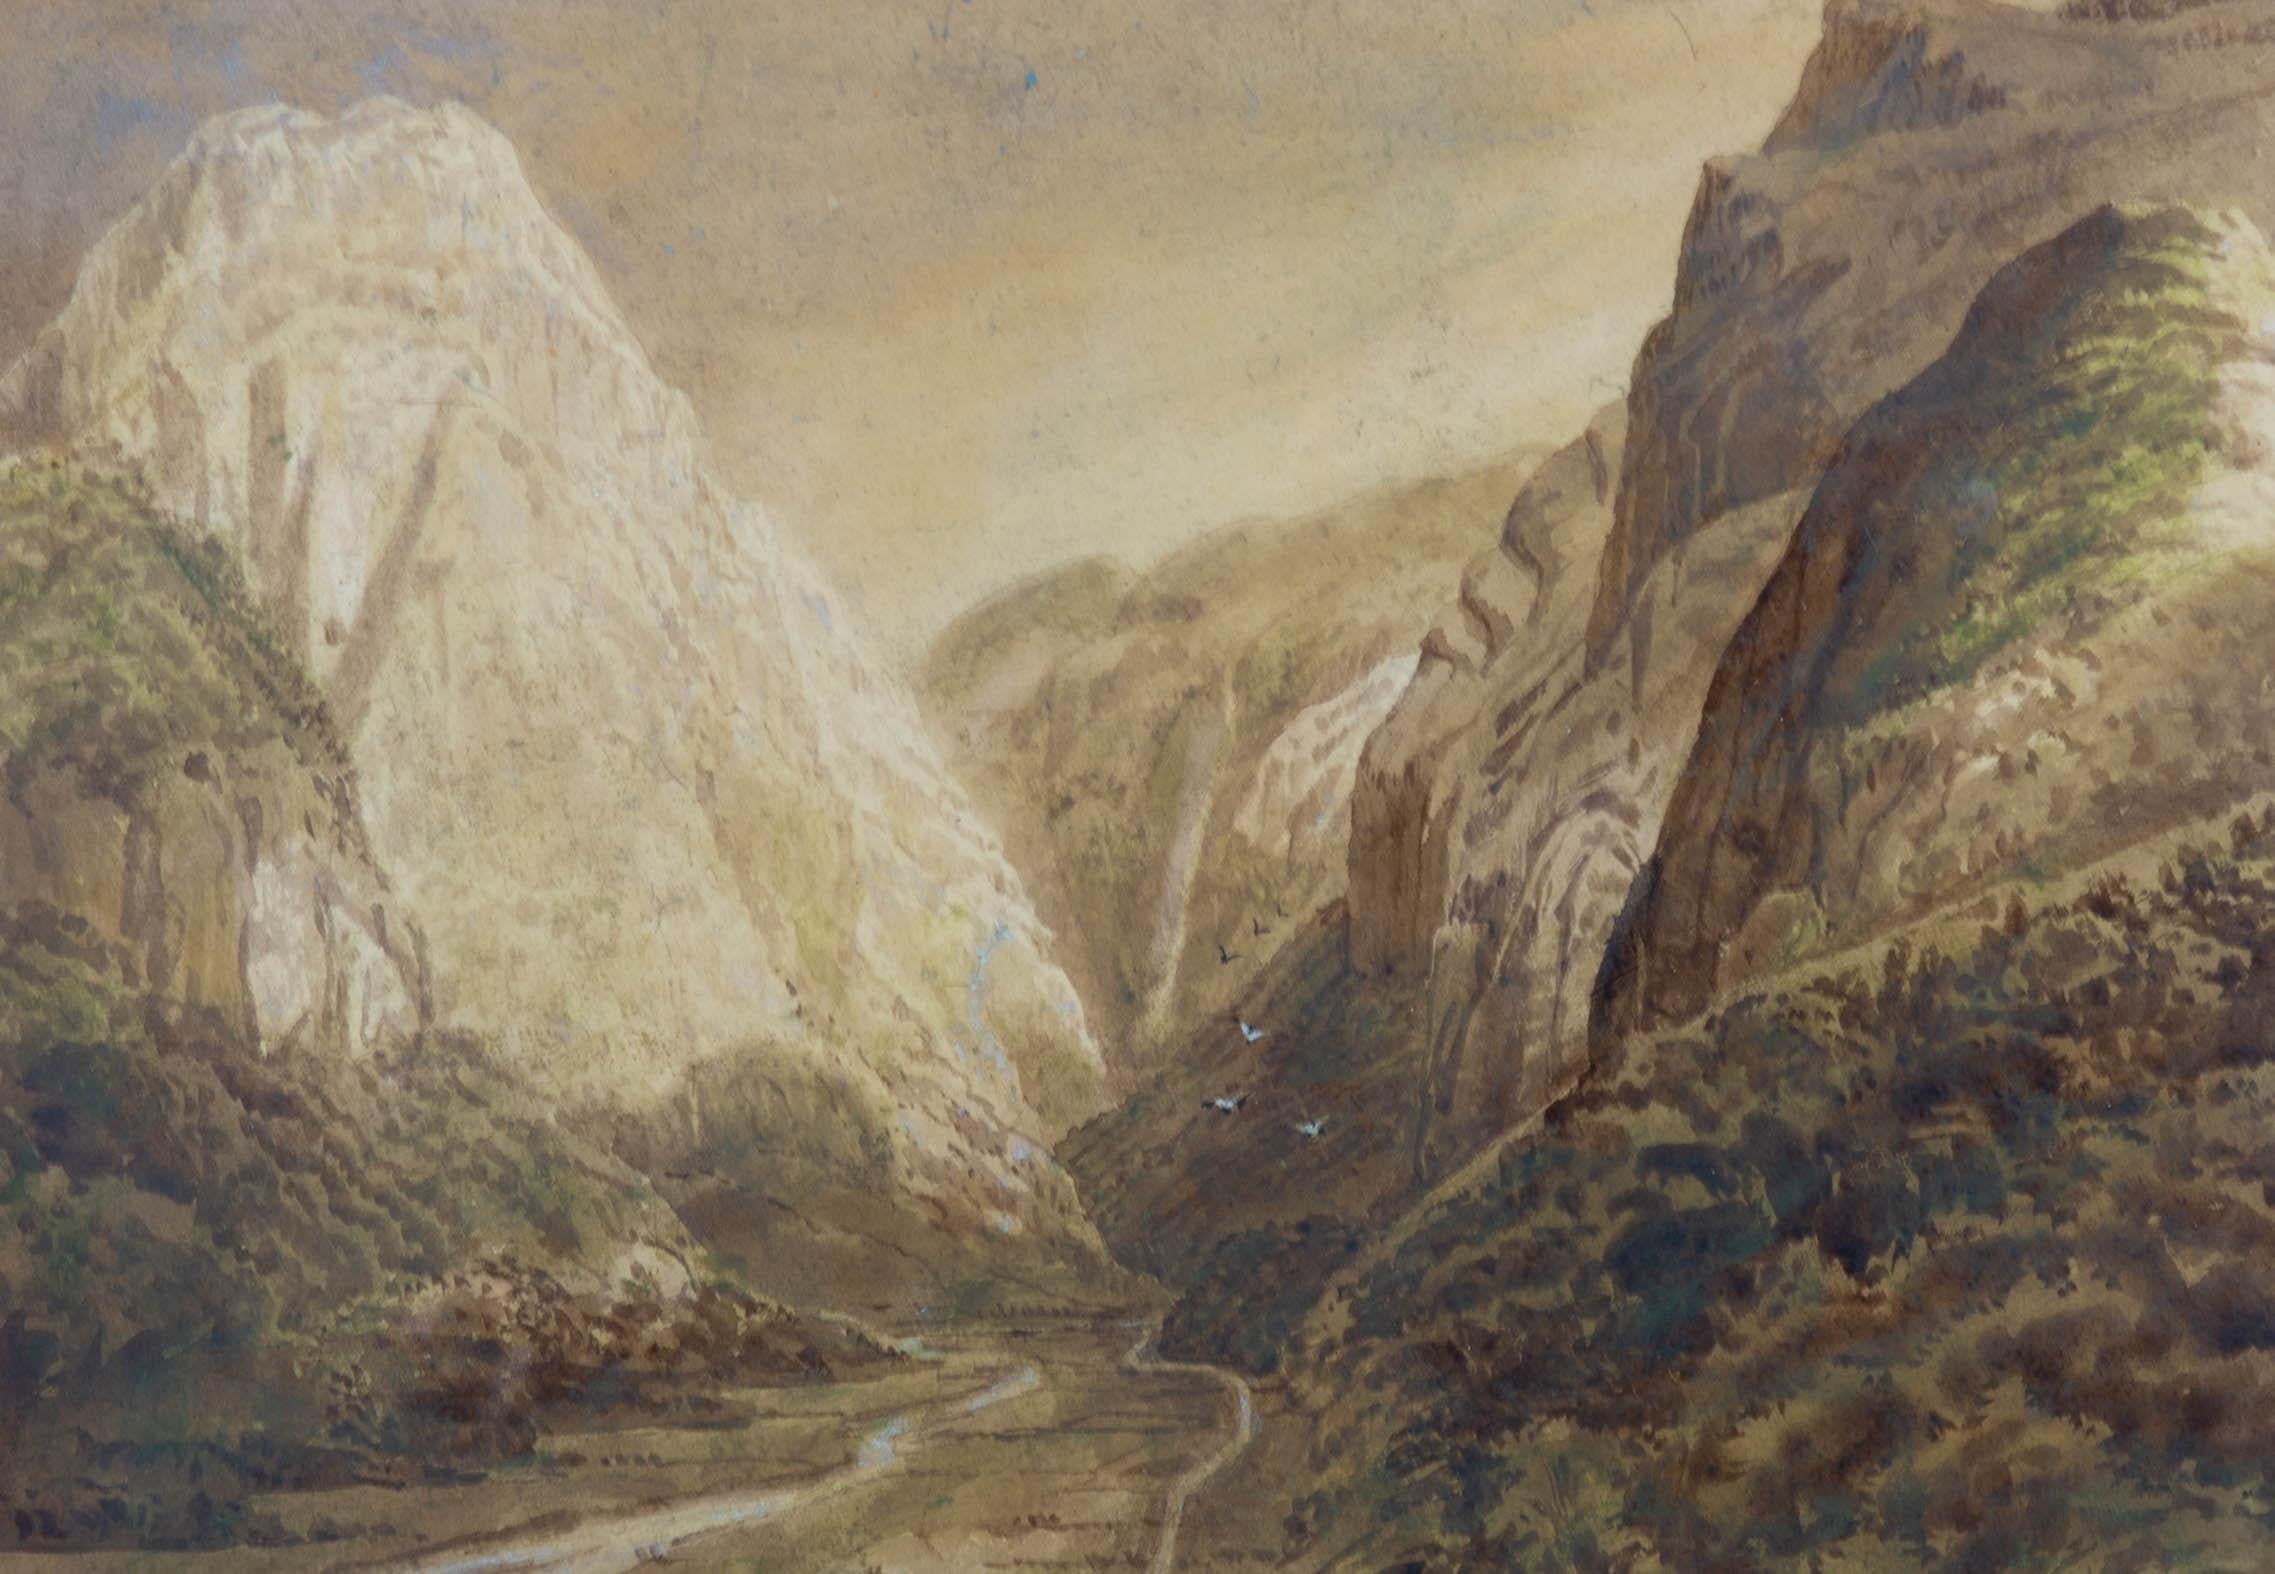 Aquarell-Aquarell des späten 19. Jahrhunderts - Berglandschaft (Grau), Landscape Art, von Unknown